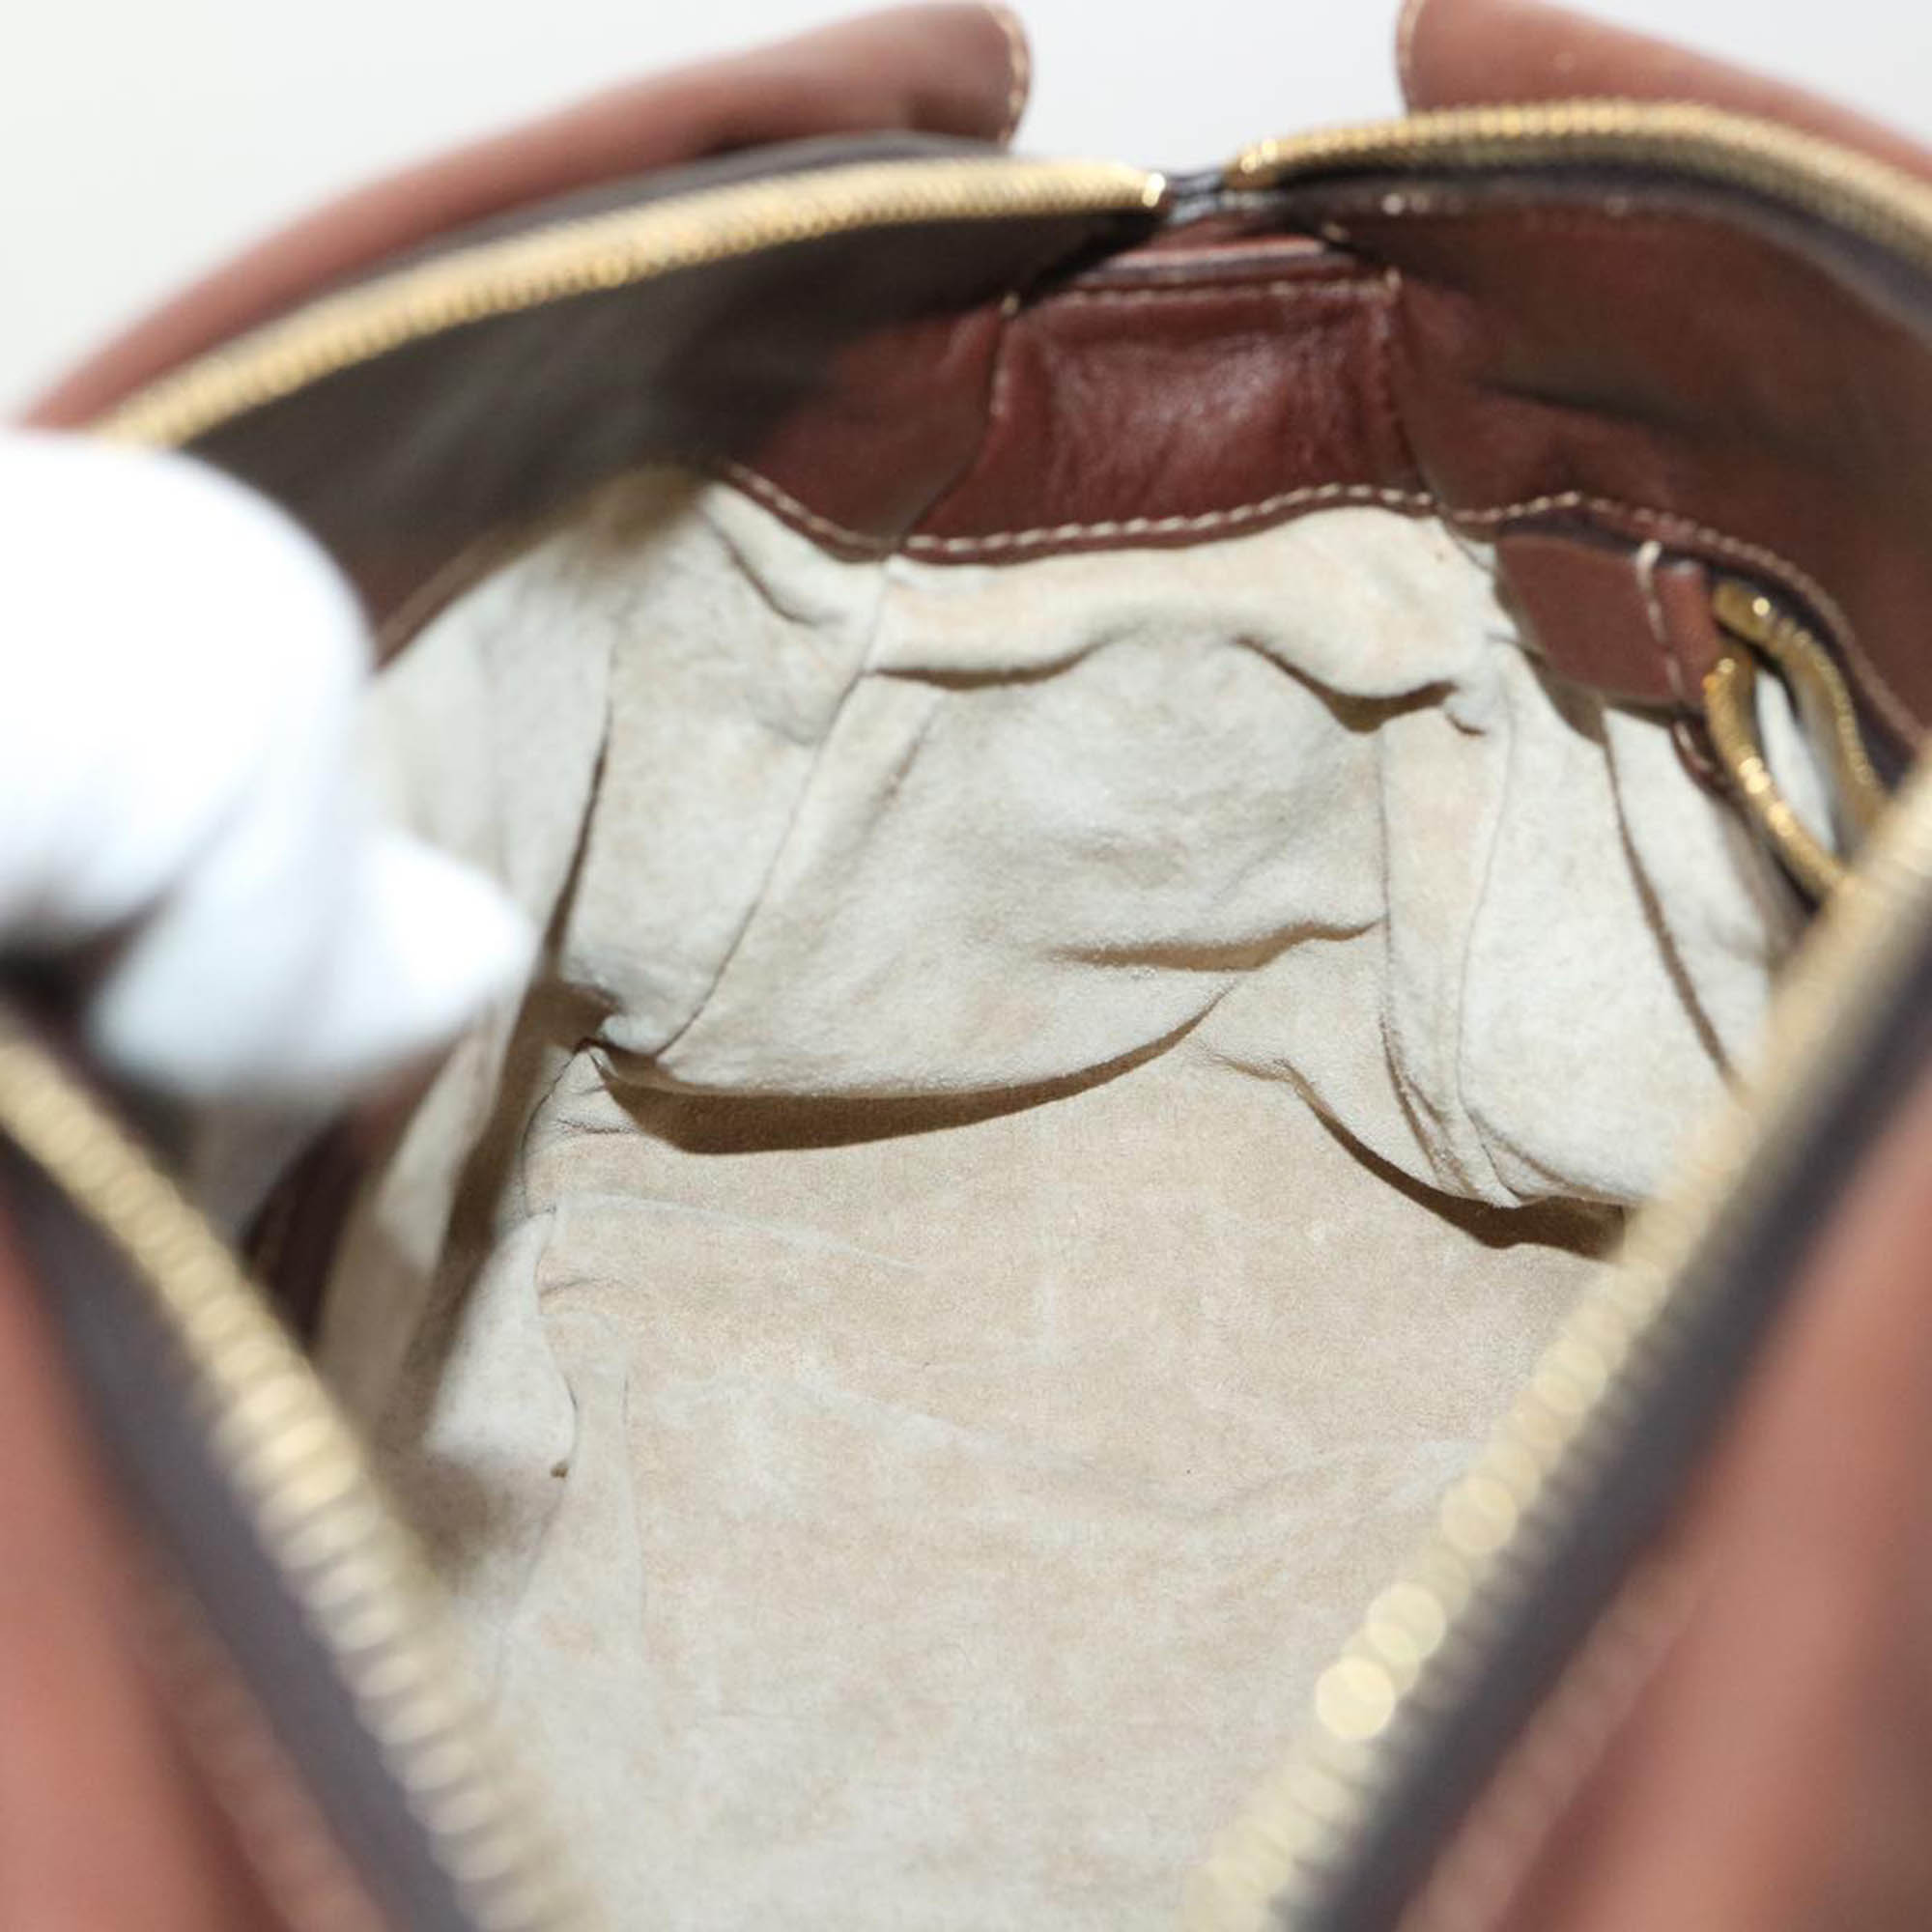 Prada Brown Leather Handbag